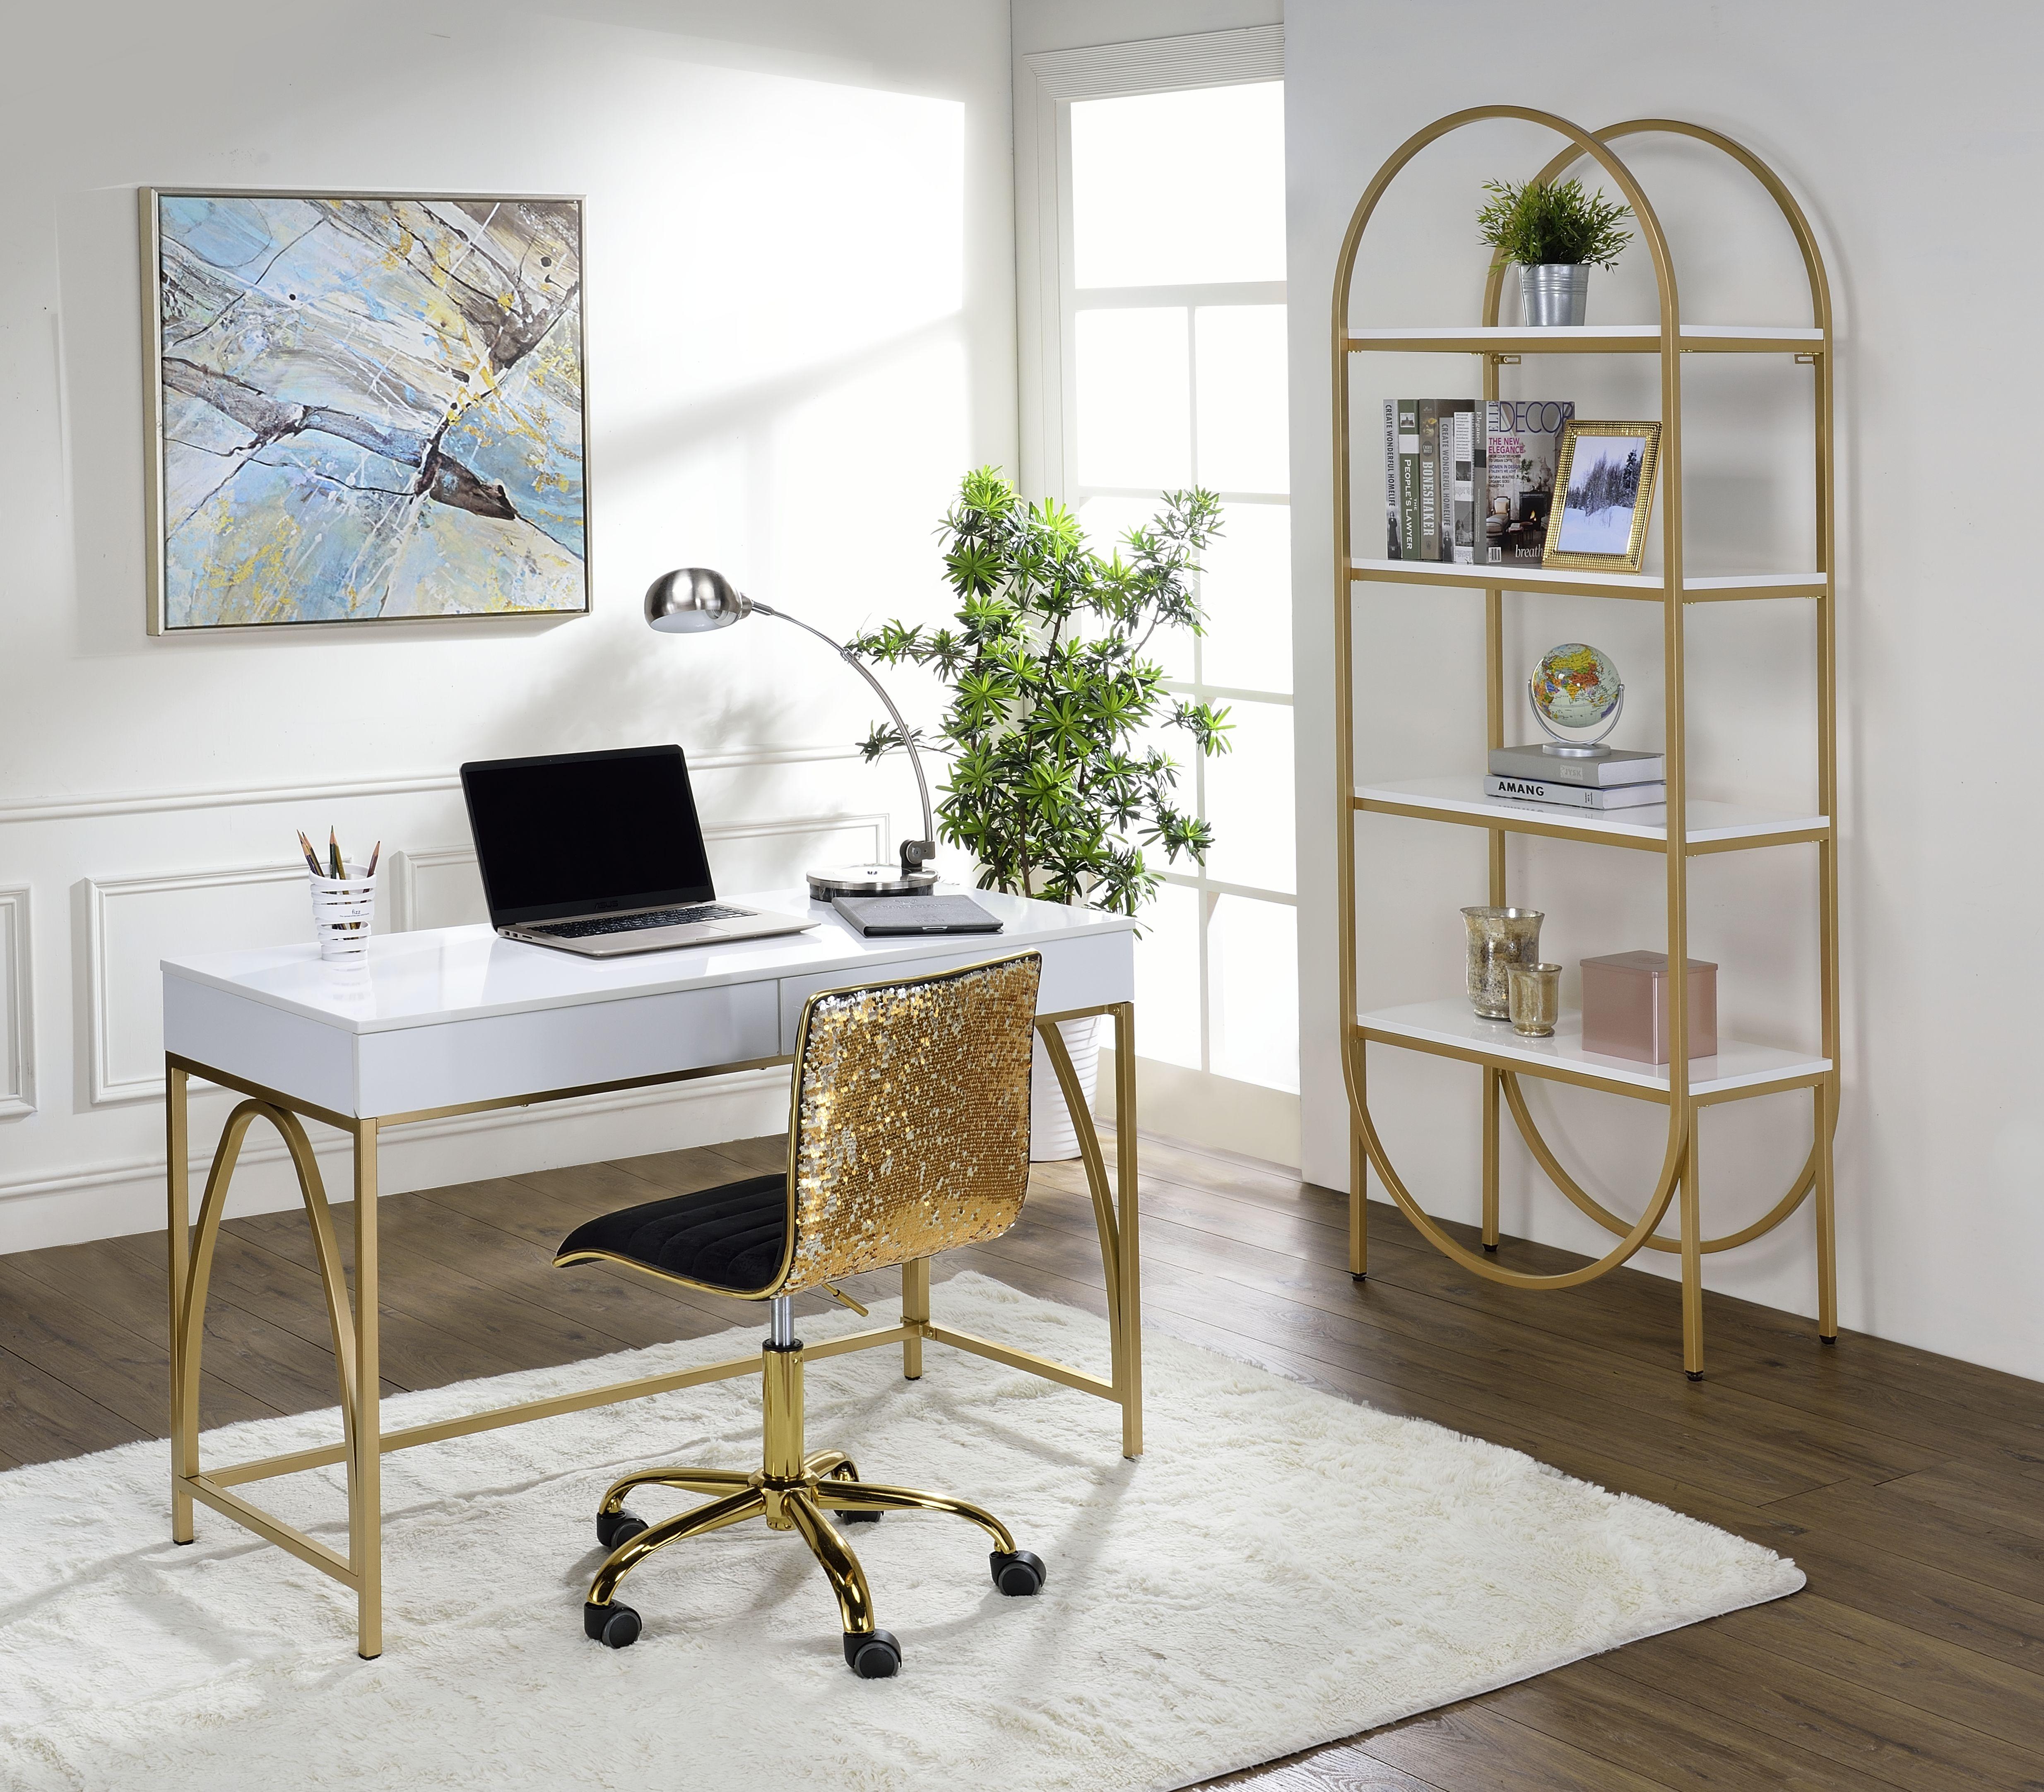 

    
Home Office Set White & Gold Writing Desk + Bookshelf by Acme Lightmane 92660-2pcs
